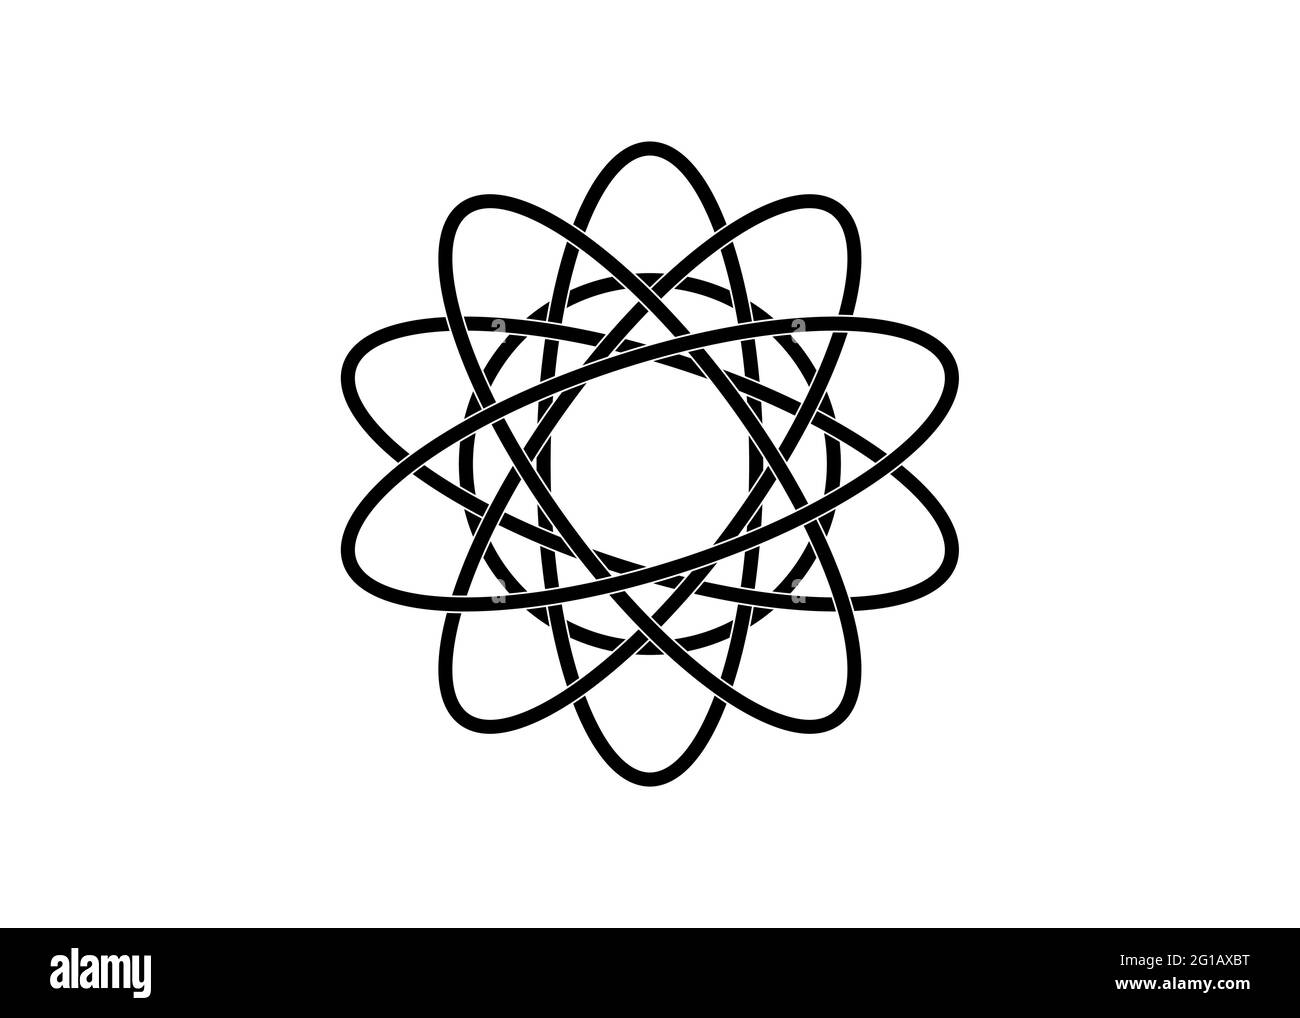 Piktogramm des Atoms. Logo-Vorlage mit schwarzer Linie im keltischen Knoten-Stil auf weißem Hintergrund. Tribal-Symbol in kreisförmiger Mandala-Form. Tattoo-Schilder Stock Vektor